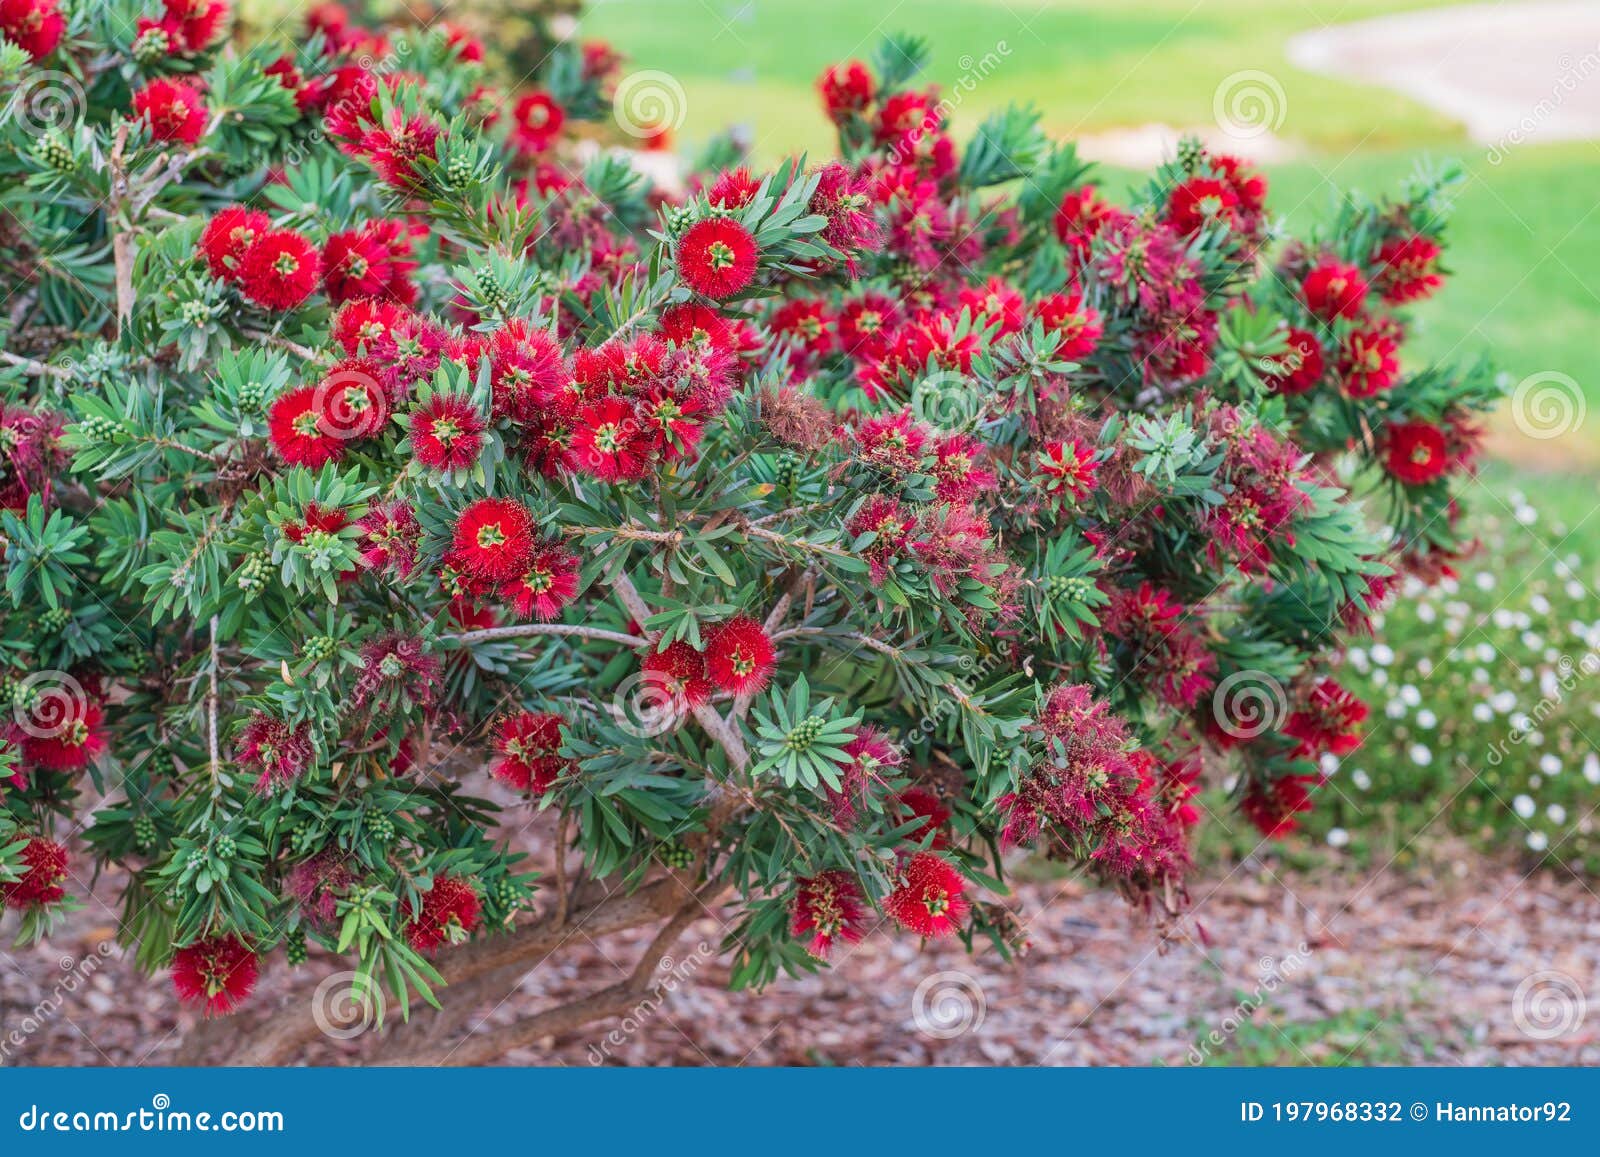 crimson bottlebrush, melaleuca citrina, an evergreen shrub with bright flowers